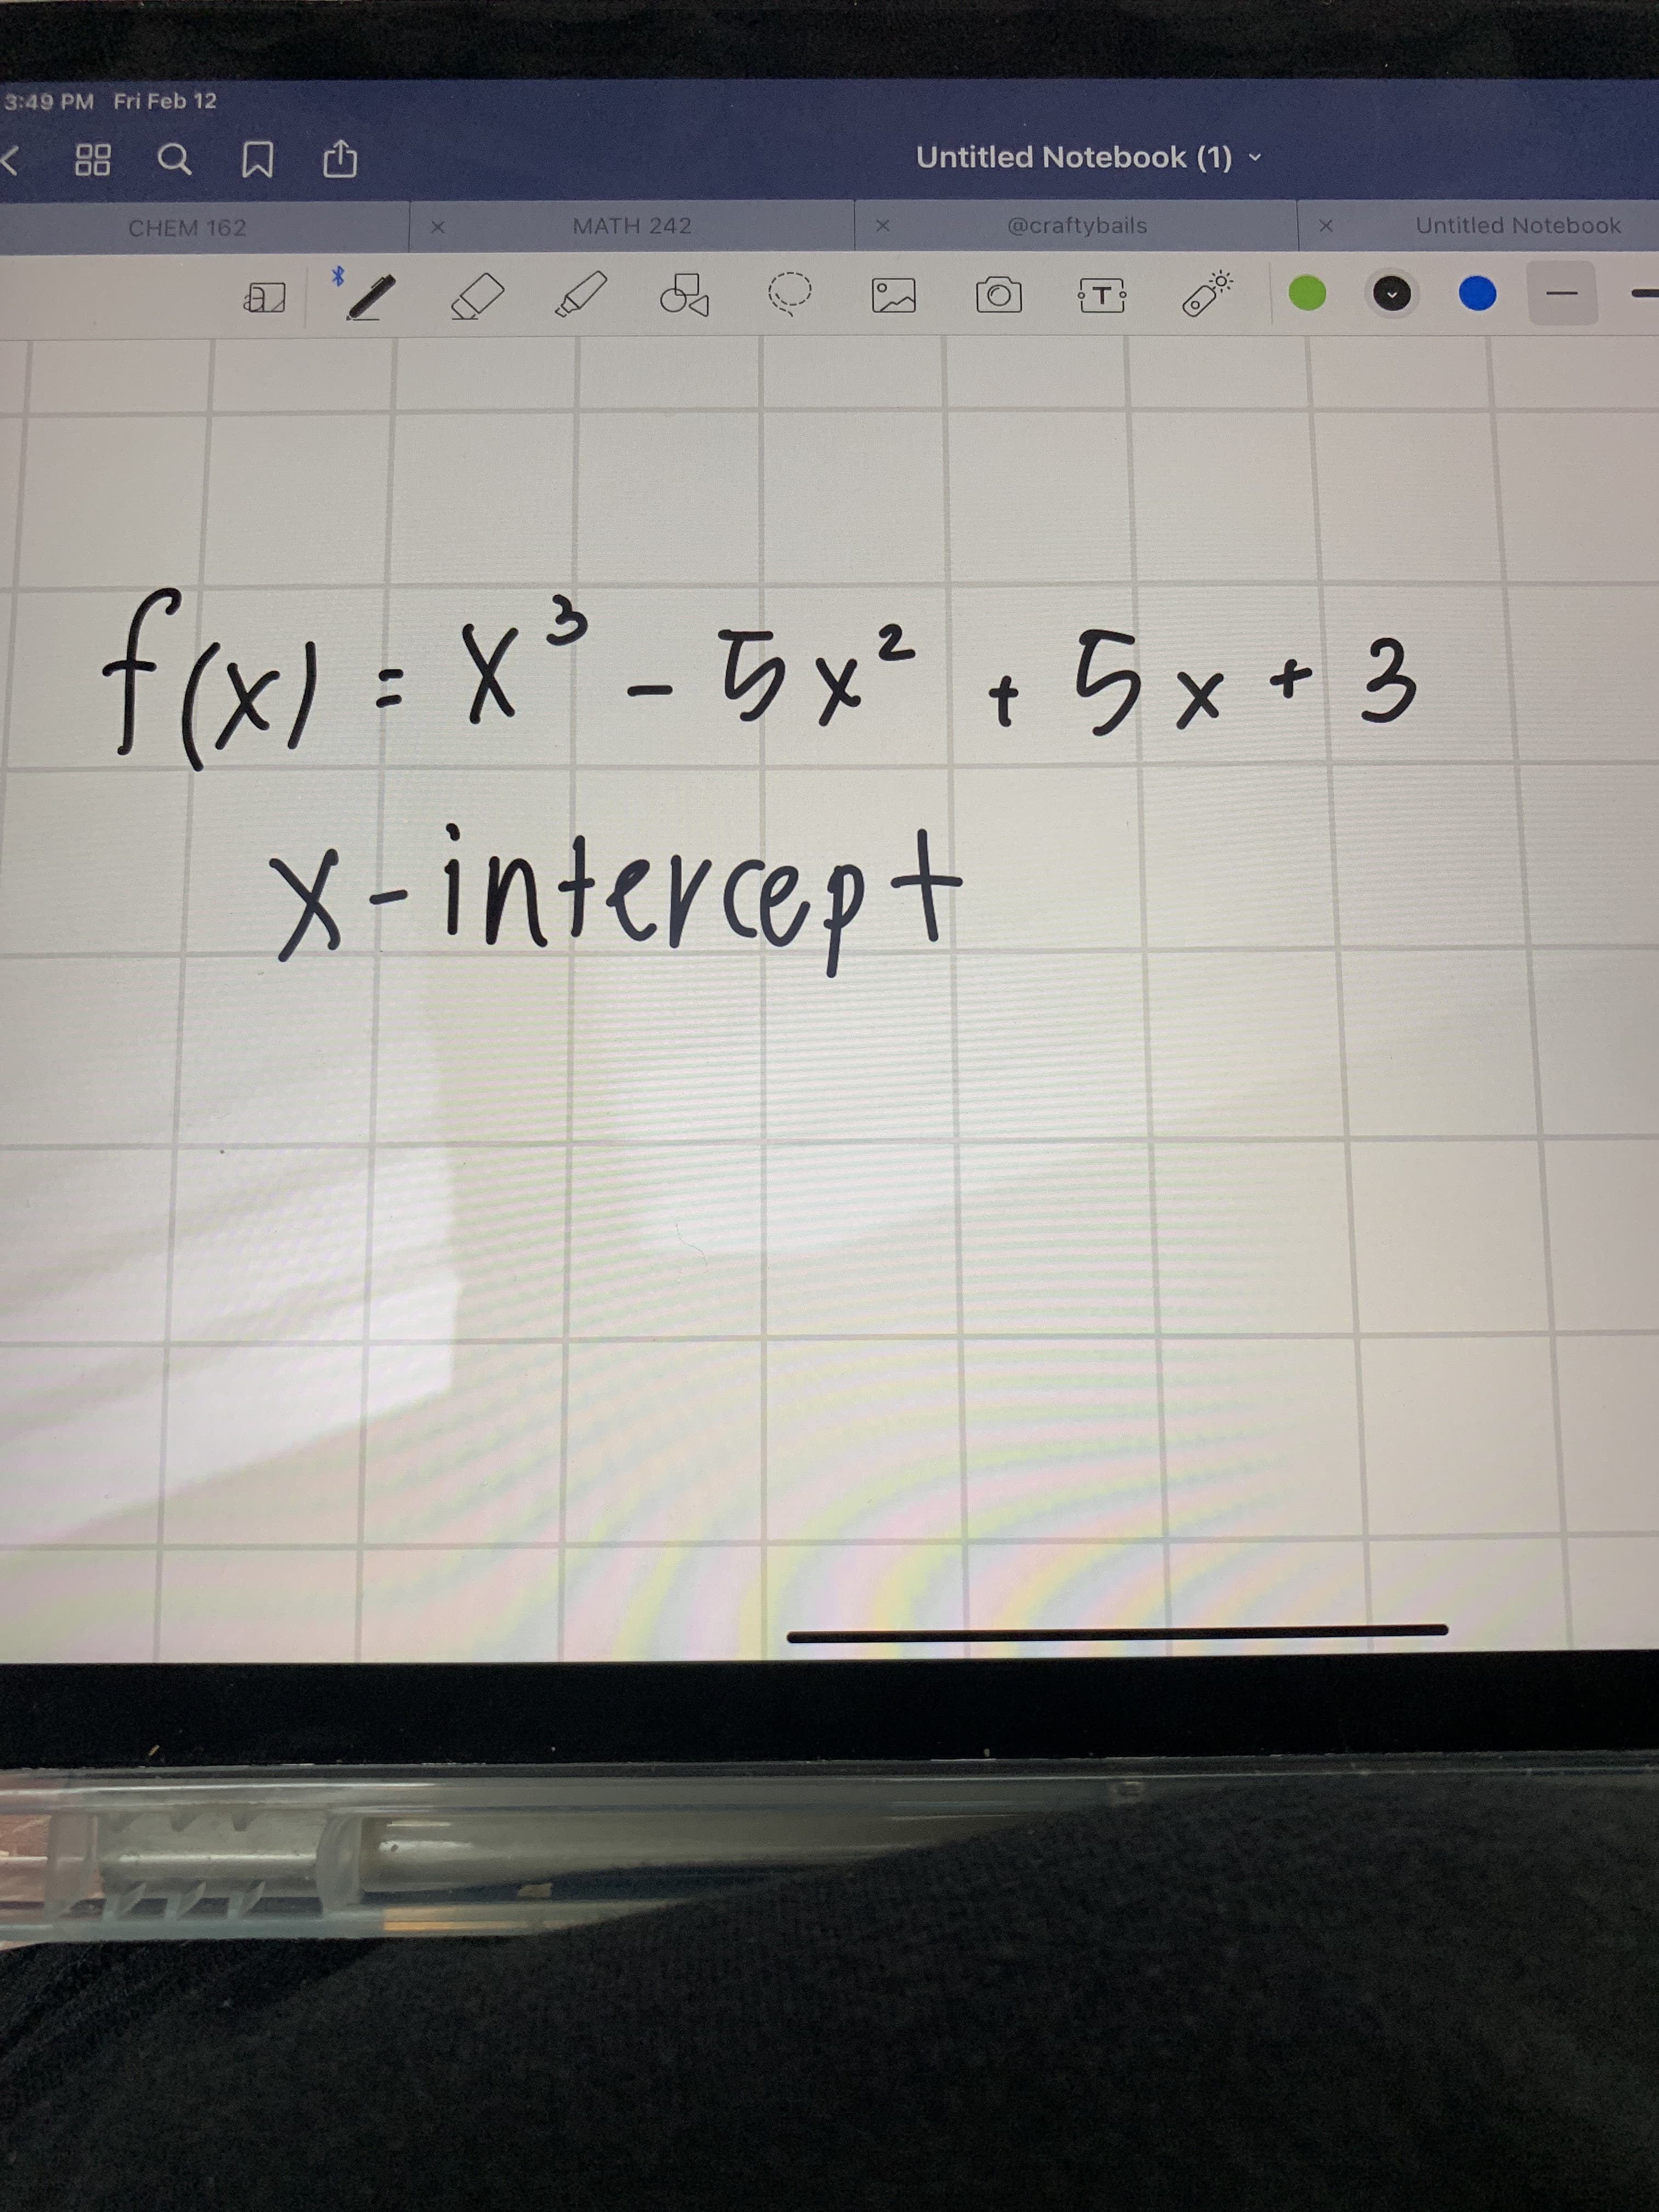 frx) = x² -5x* , 5x * 3
%3D
t
X-intercept
